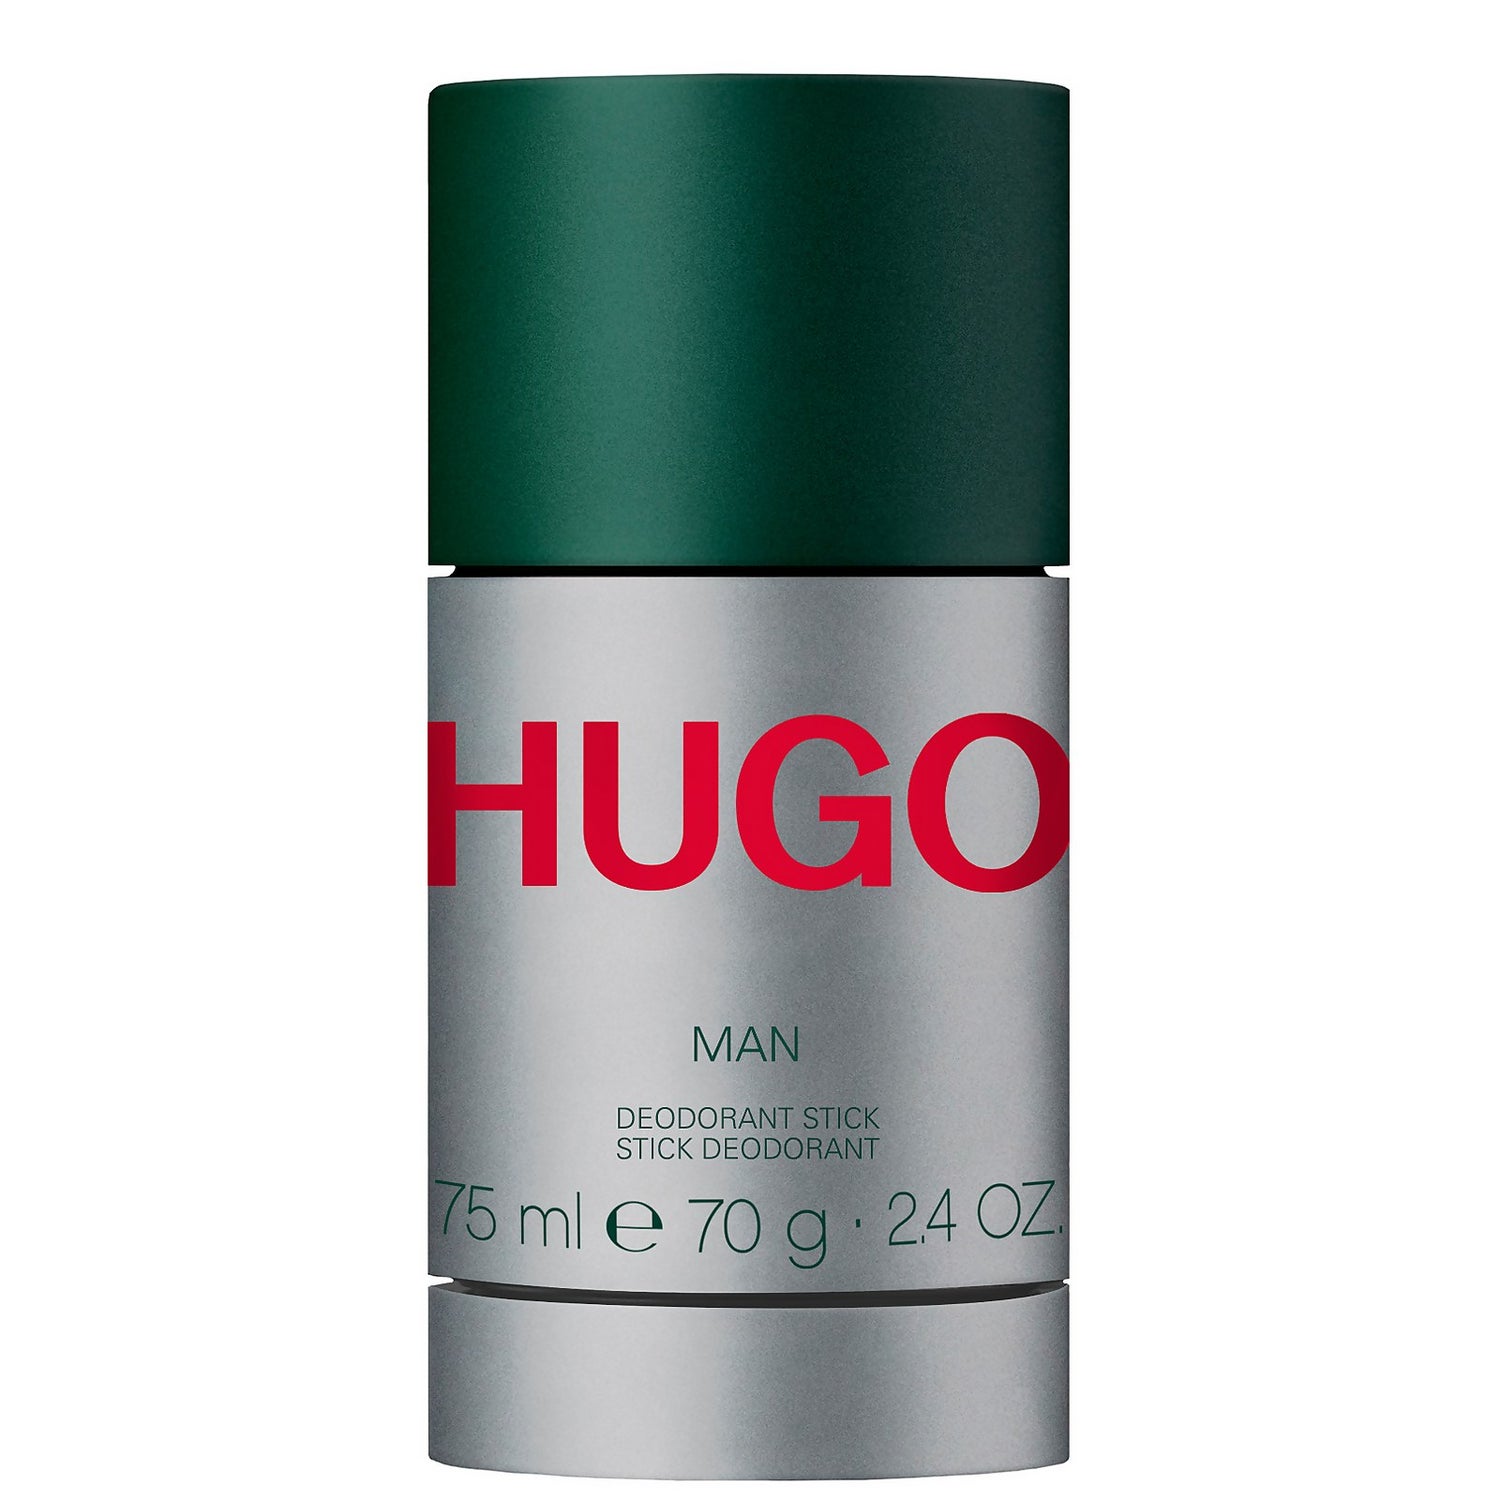 HUGO HUGO Man Deodorant Stick 75ml -